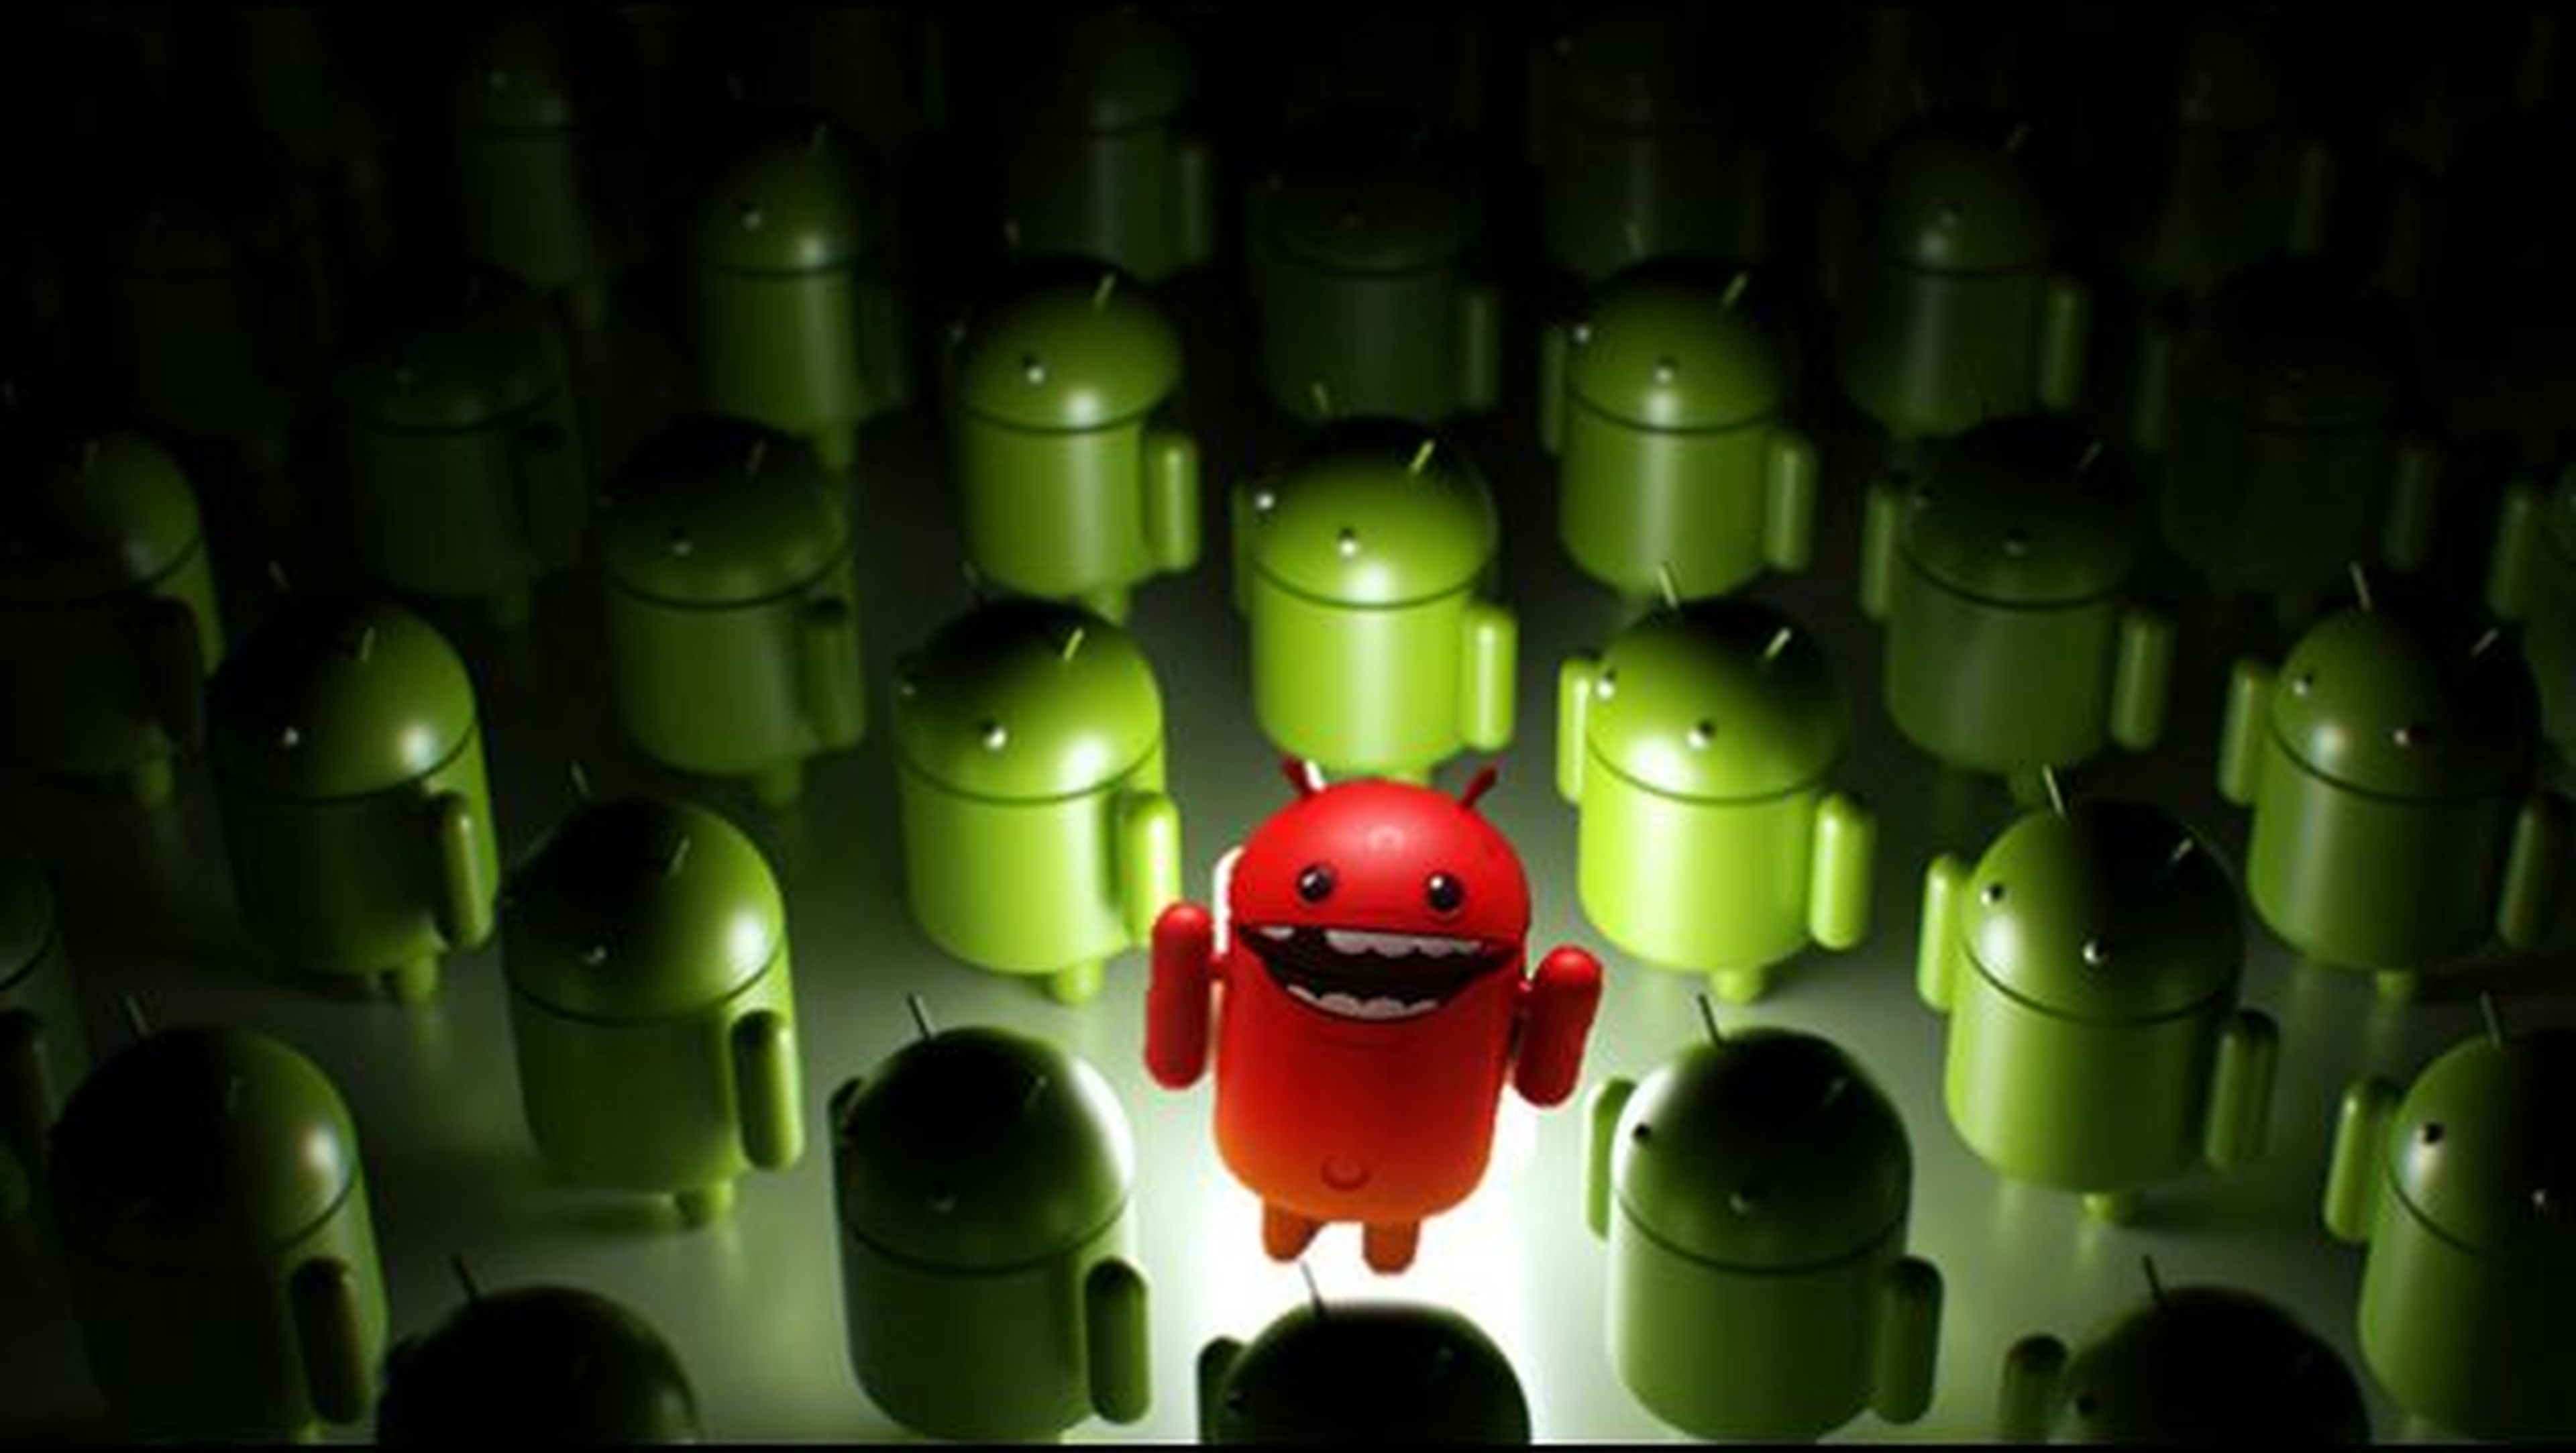 El 87% de móviles Android no son seguros, según un estudio